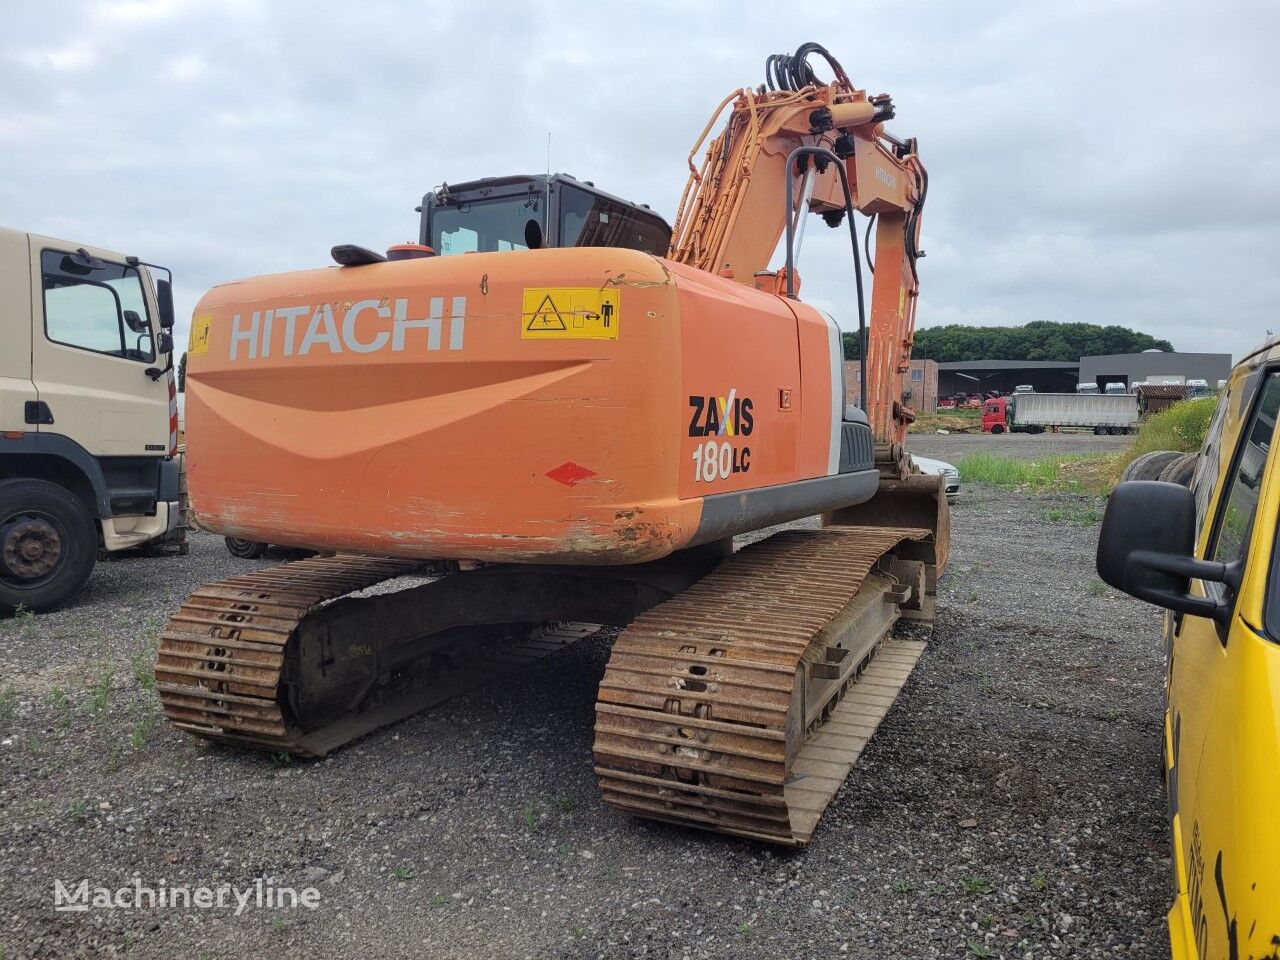 Hitachi ZX180 tracked excavator